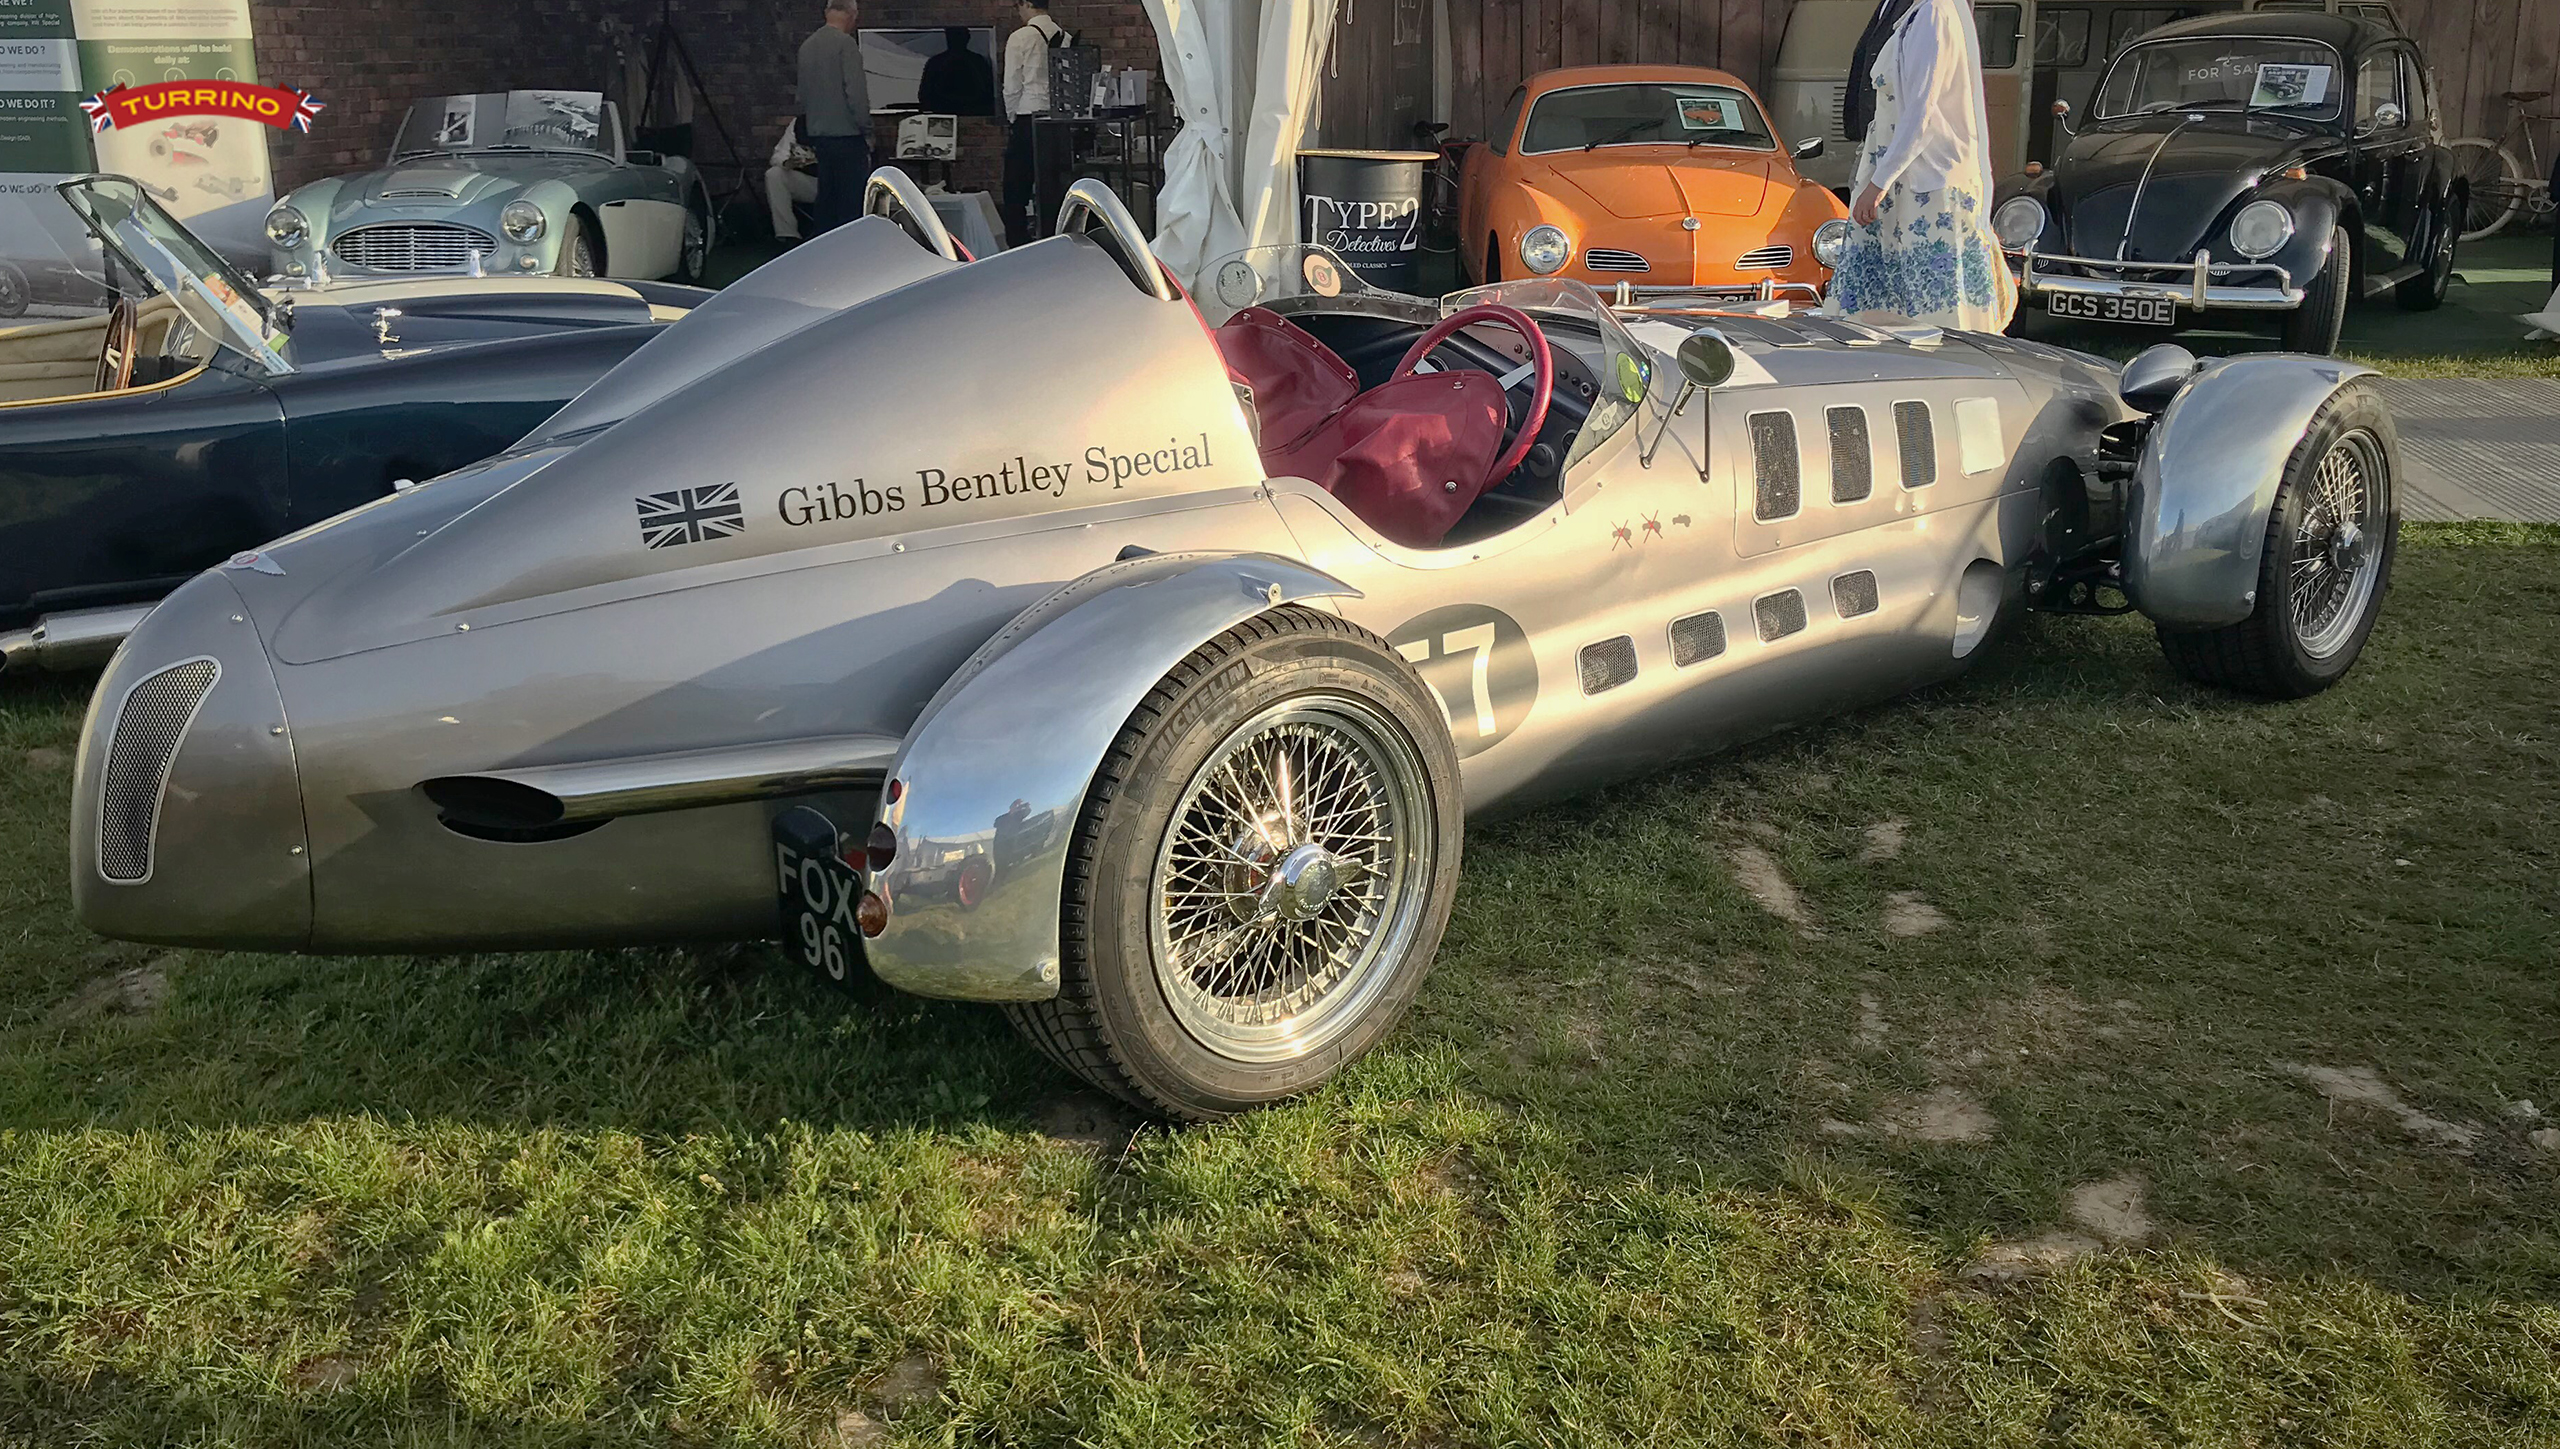 Gibbs Bentley Special wire wheels